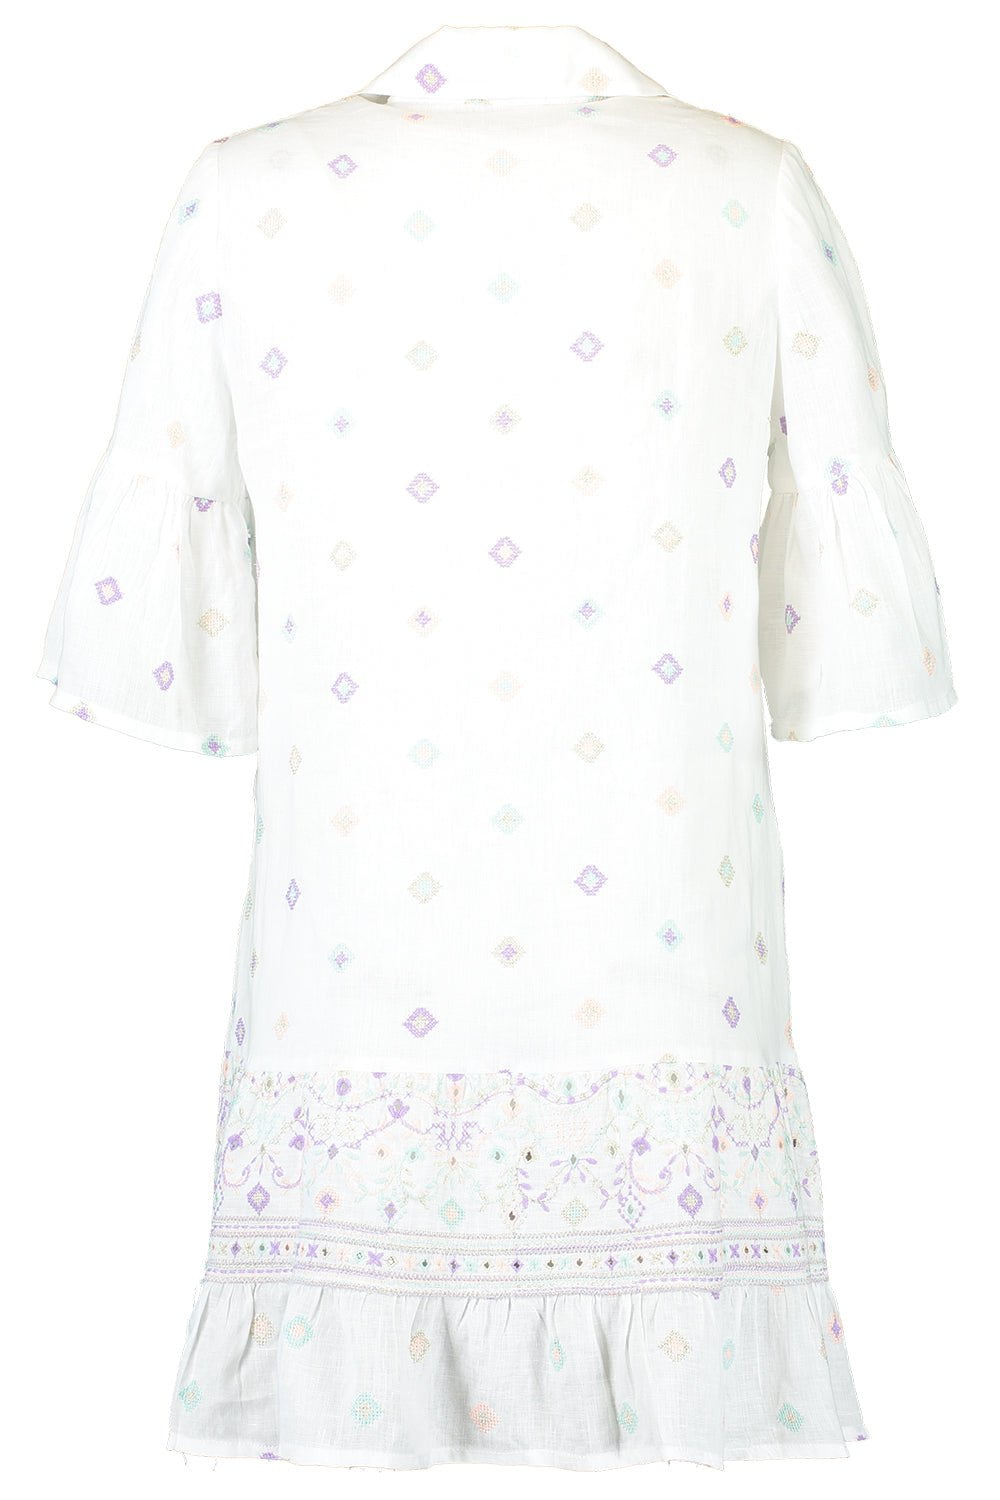 TEMPTATION POSITANO-Embroidered Button Shirt Dress - Grecco Lilla-